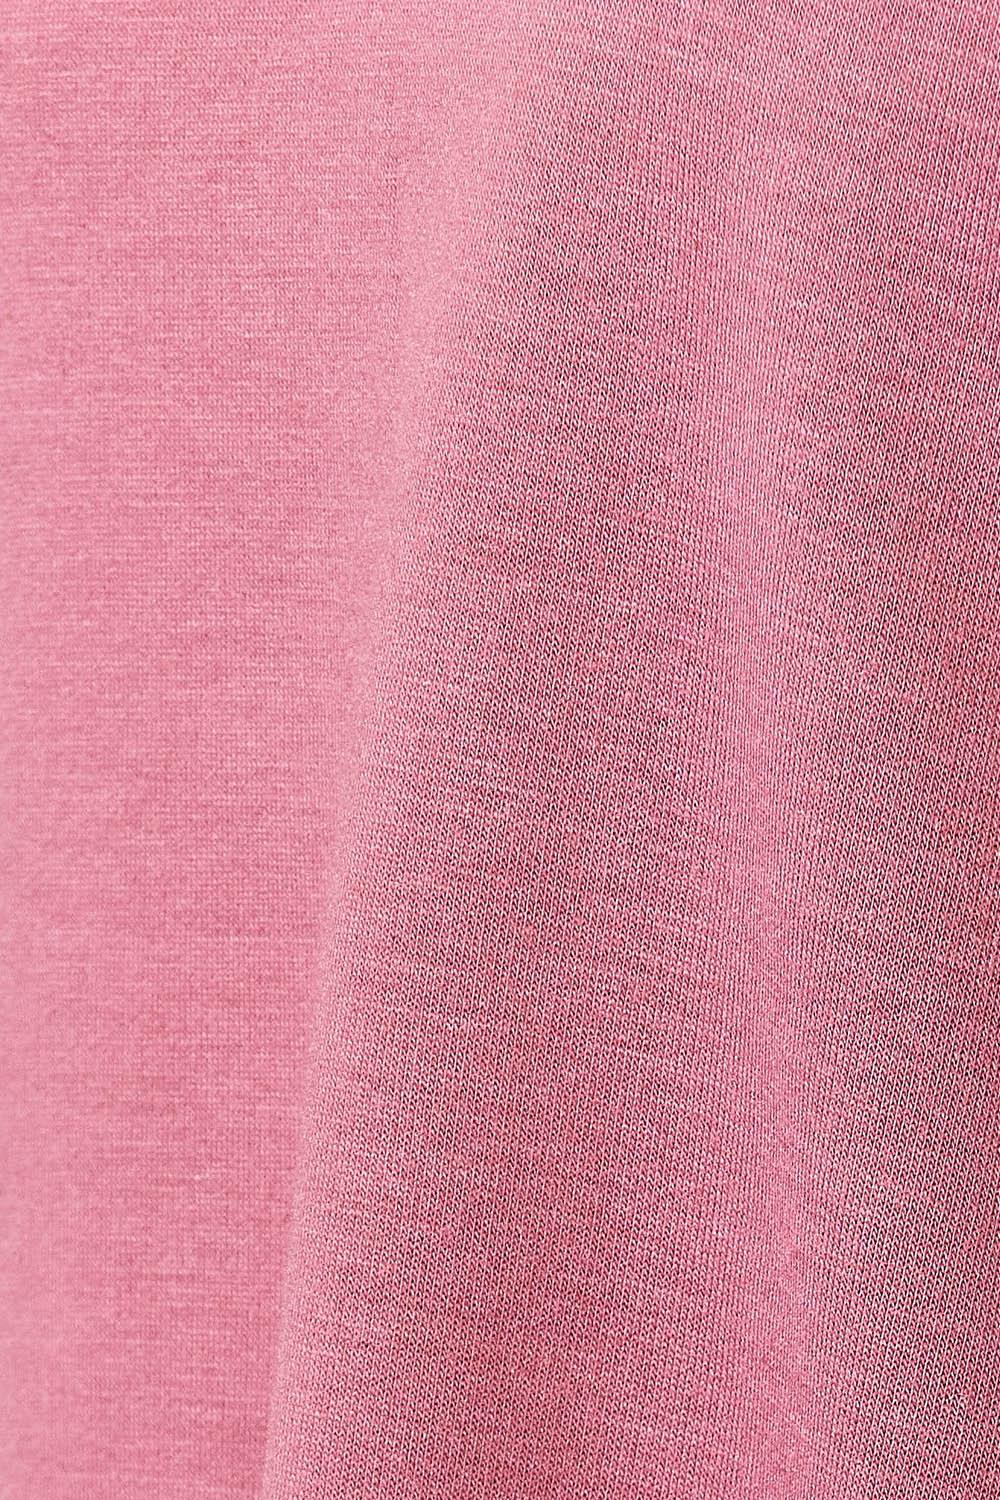 a close up of a pink shirt